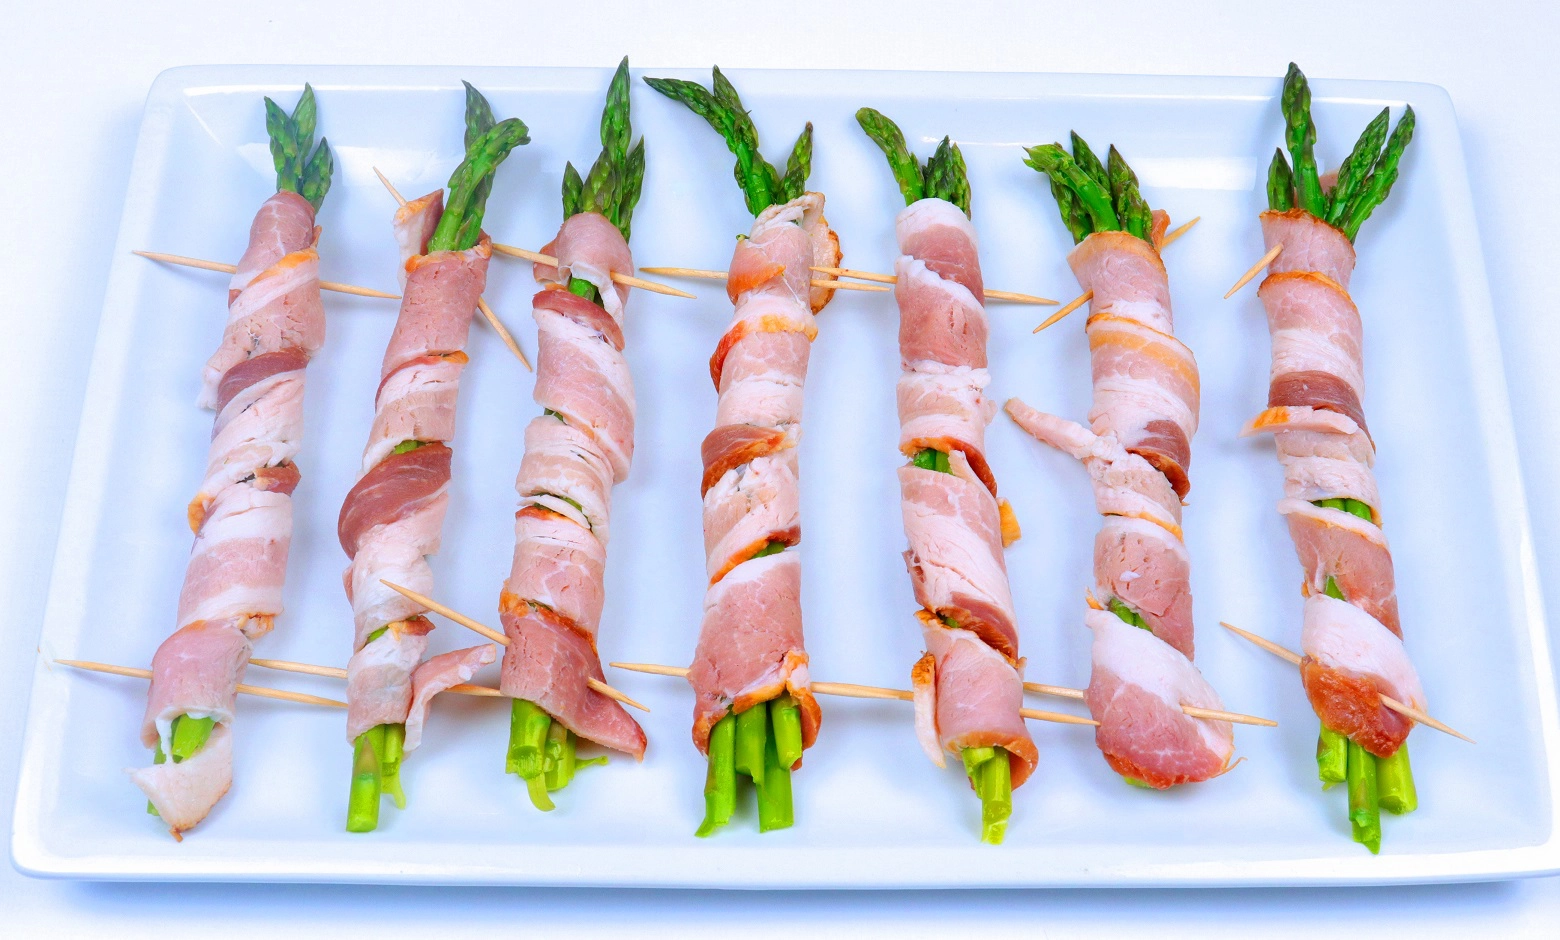 How to Wrap Asparagus